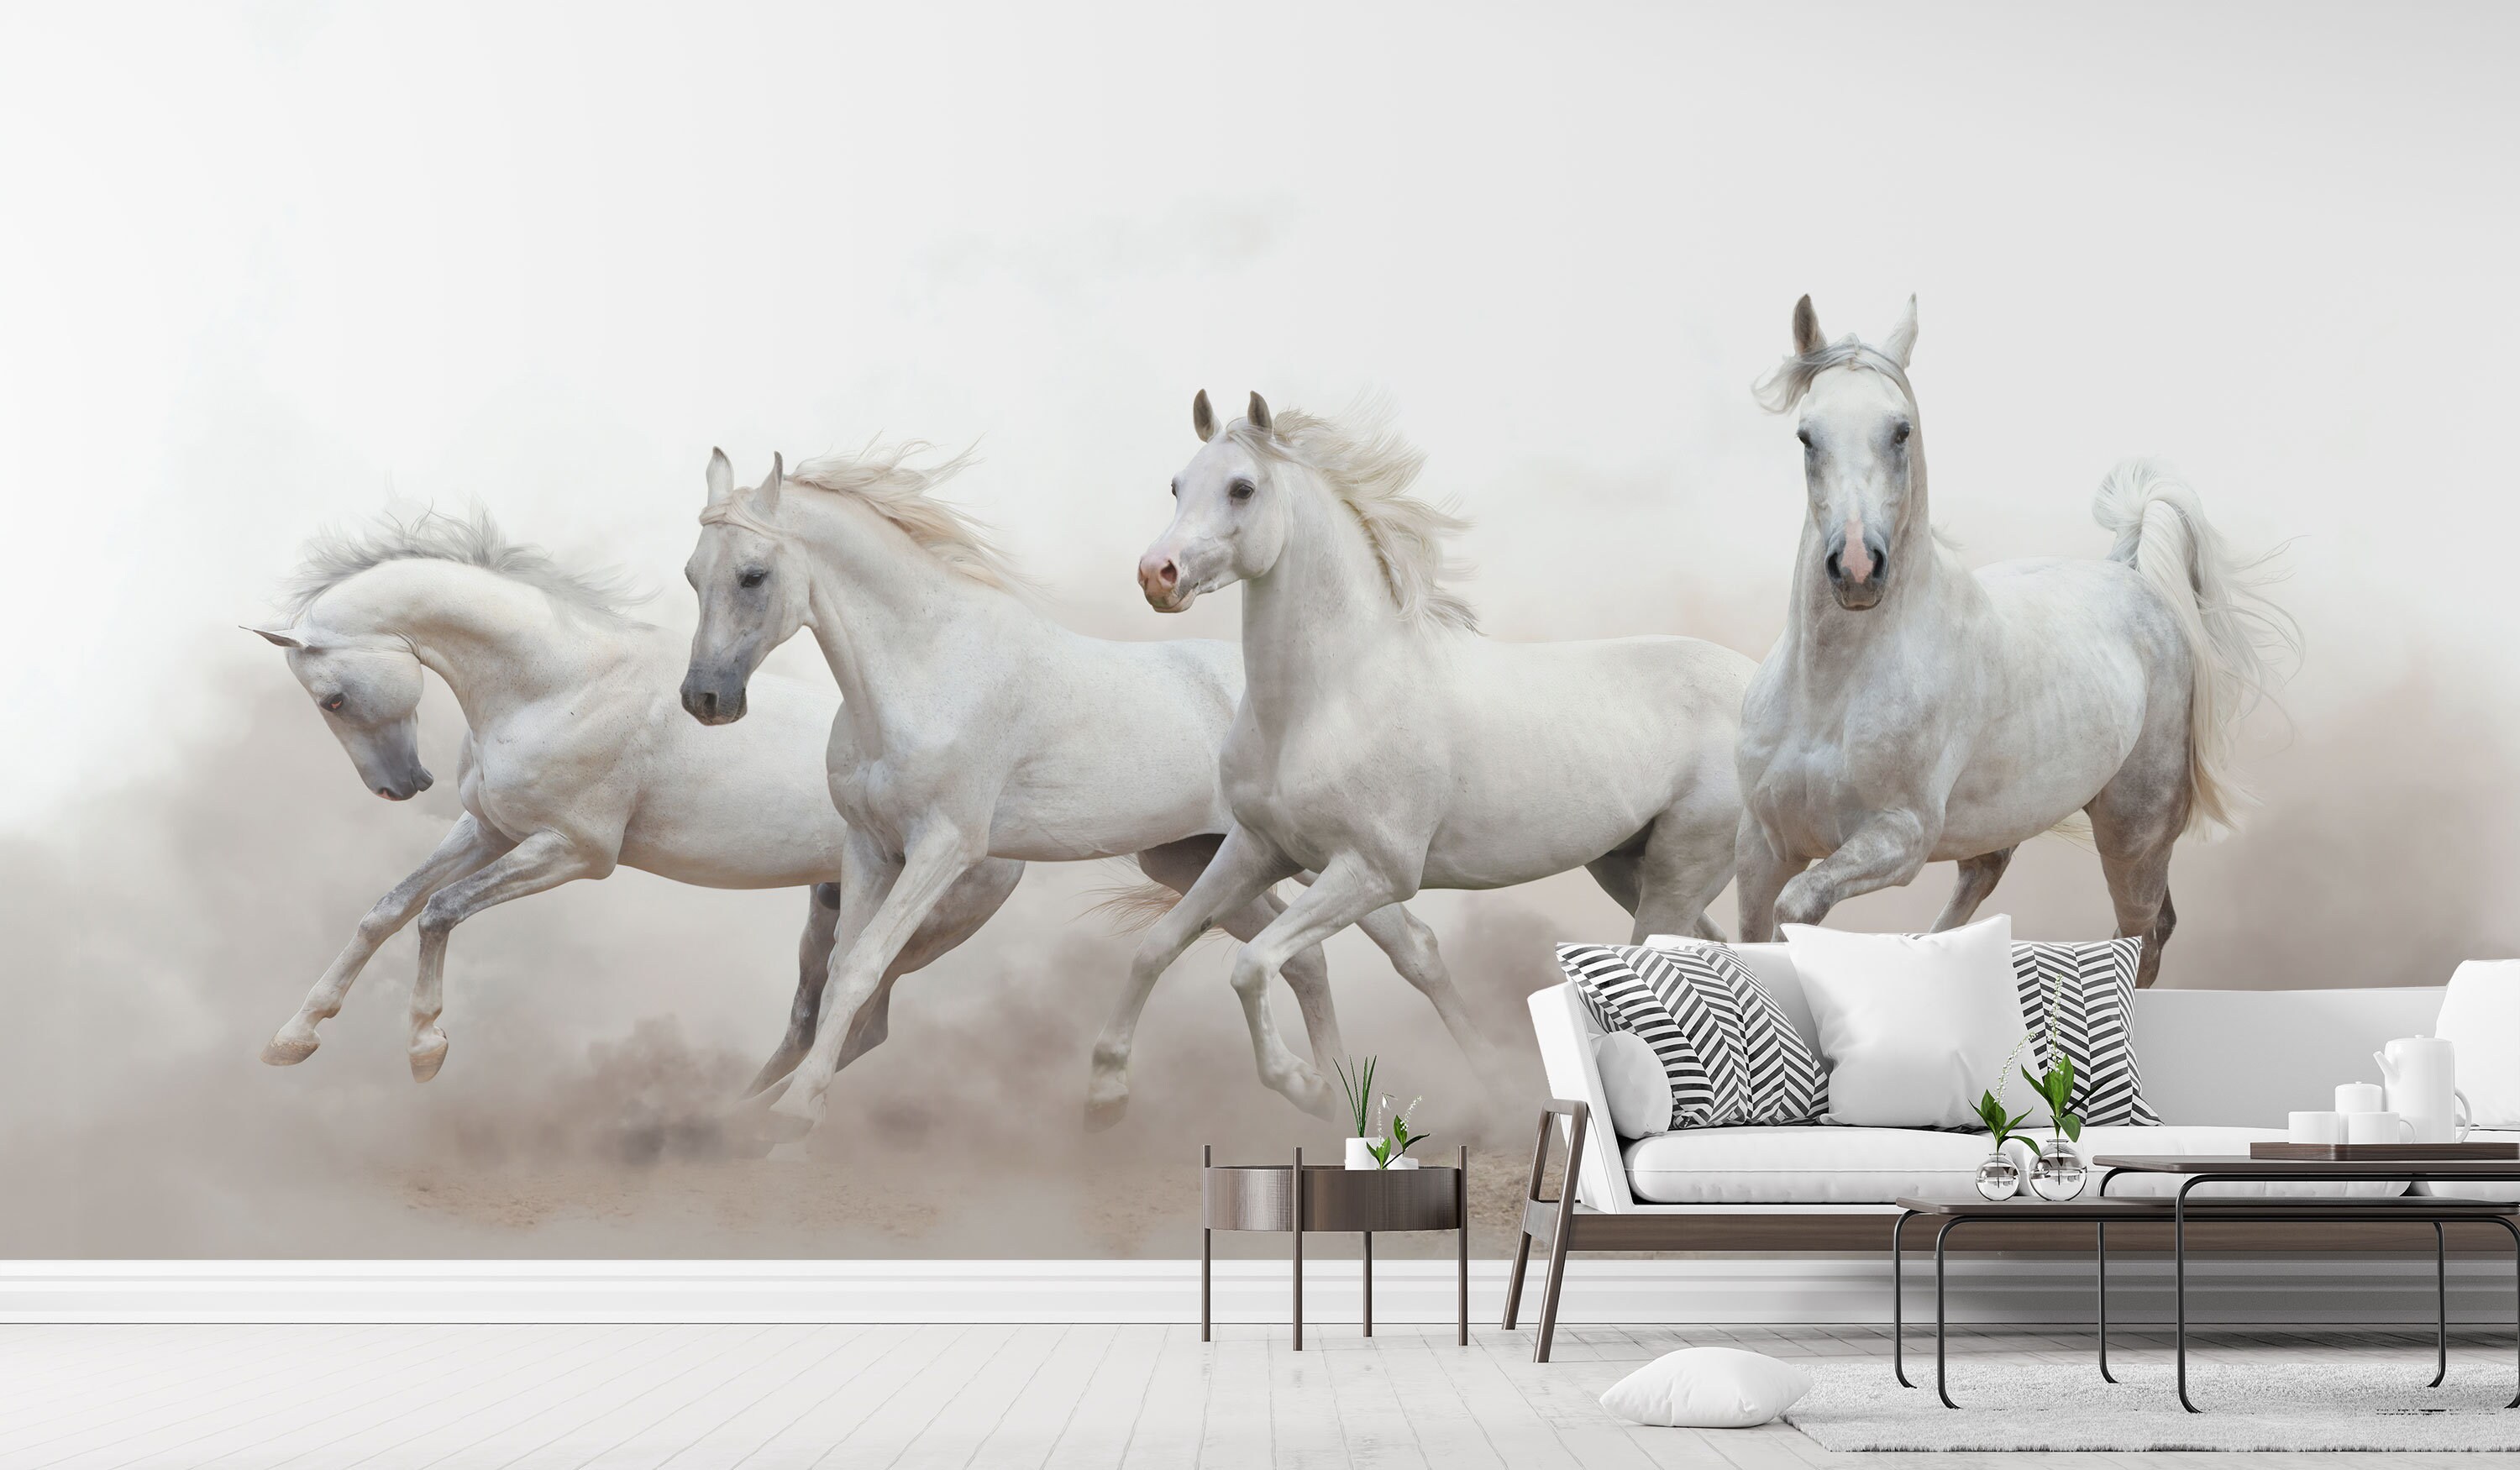 horse rider wallpaper